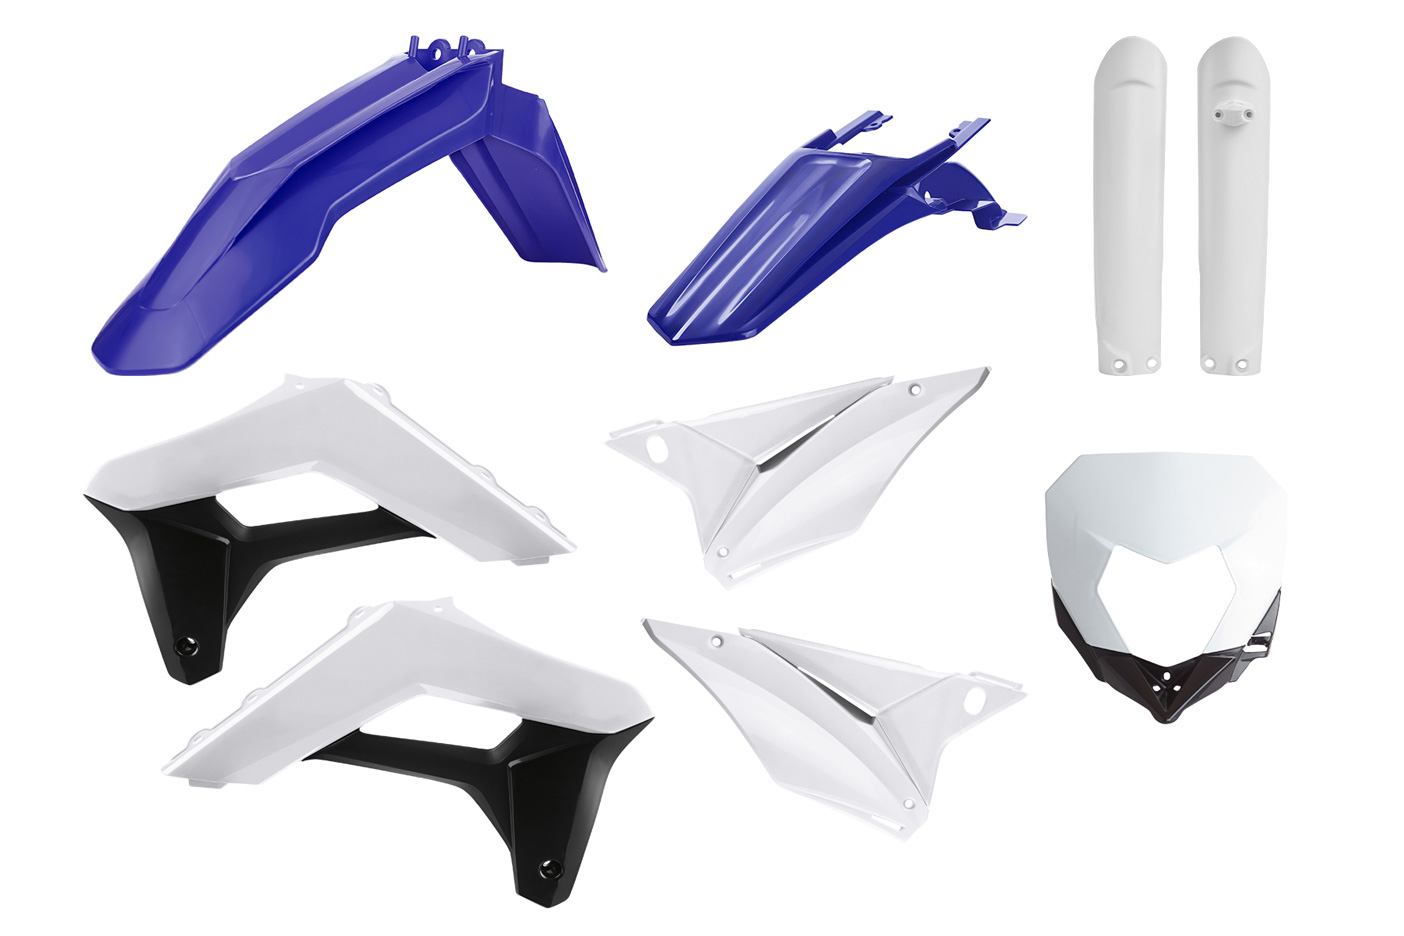 Plastikteile für deine Sherco SE-R und SEF-R in blau-weiß, bestehend aus Frontkotflügel, Heckkotflügel, Tankspoiler, Gabelschoner, Nummerntafeln, Seitenteilen und Lampenmaske